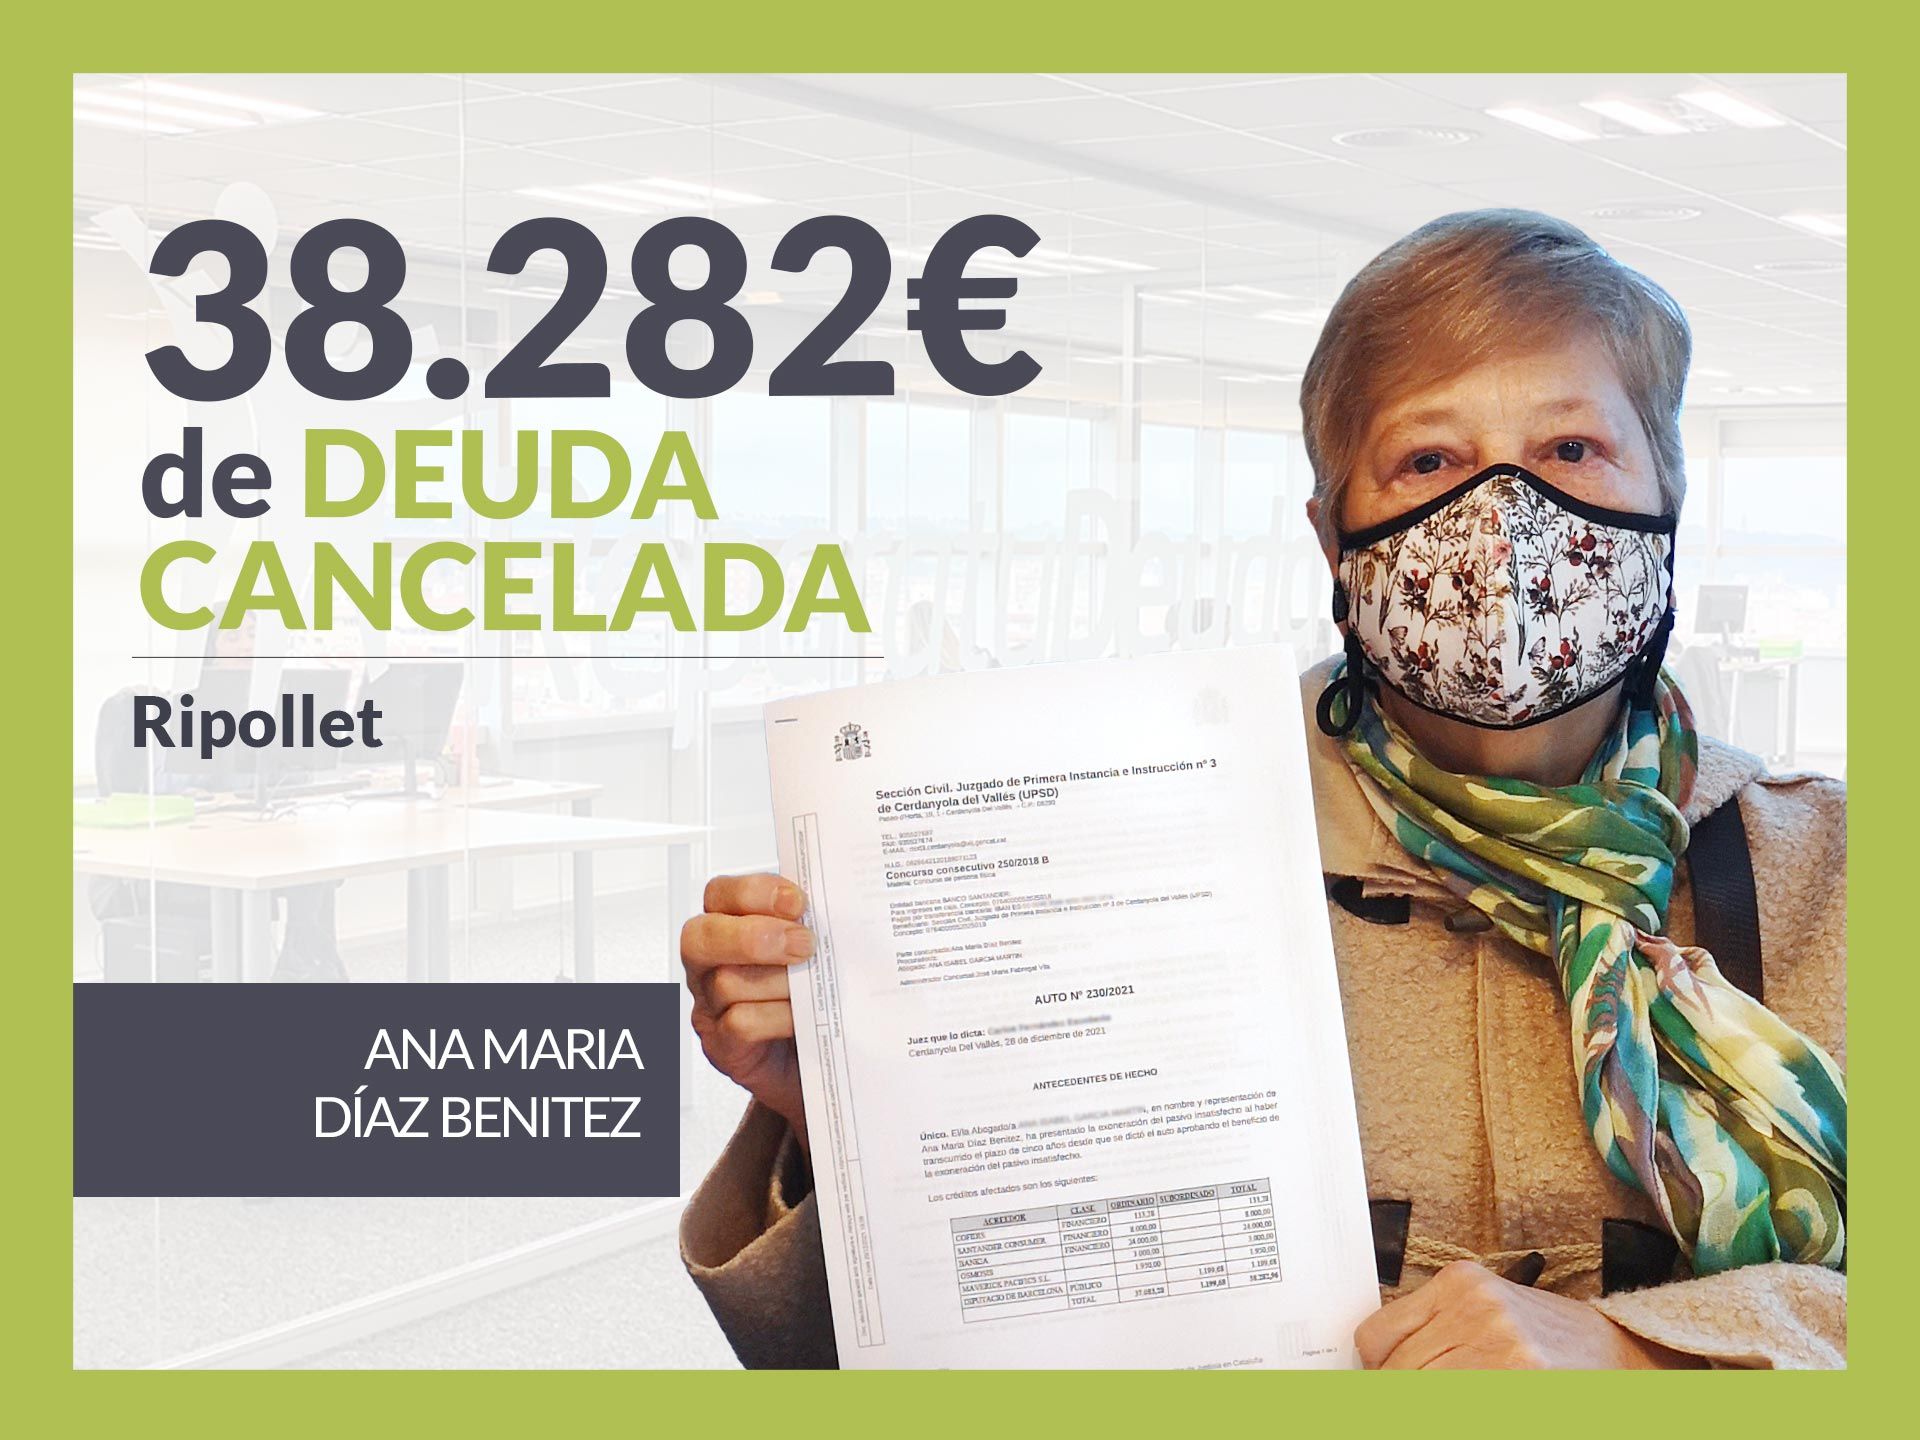 Repara tu Deuda Abogados cancela 38.282 ? en Ripollet (Barcelona) con la Ley de Segunda Oportunidad